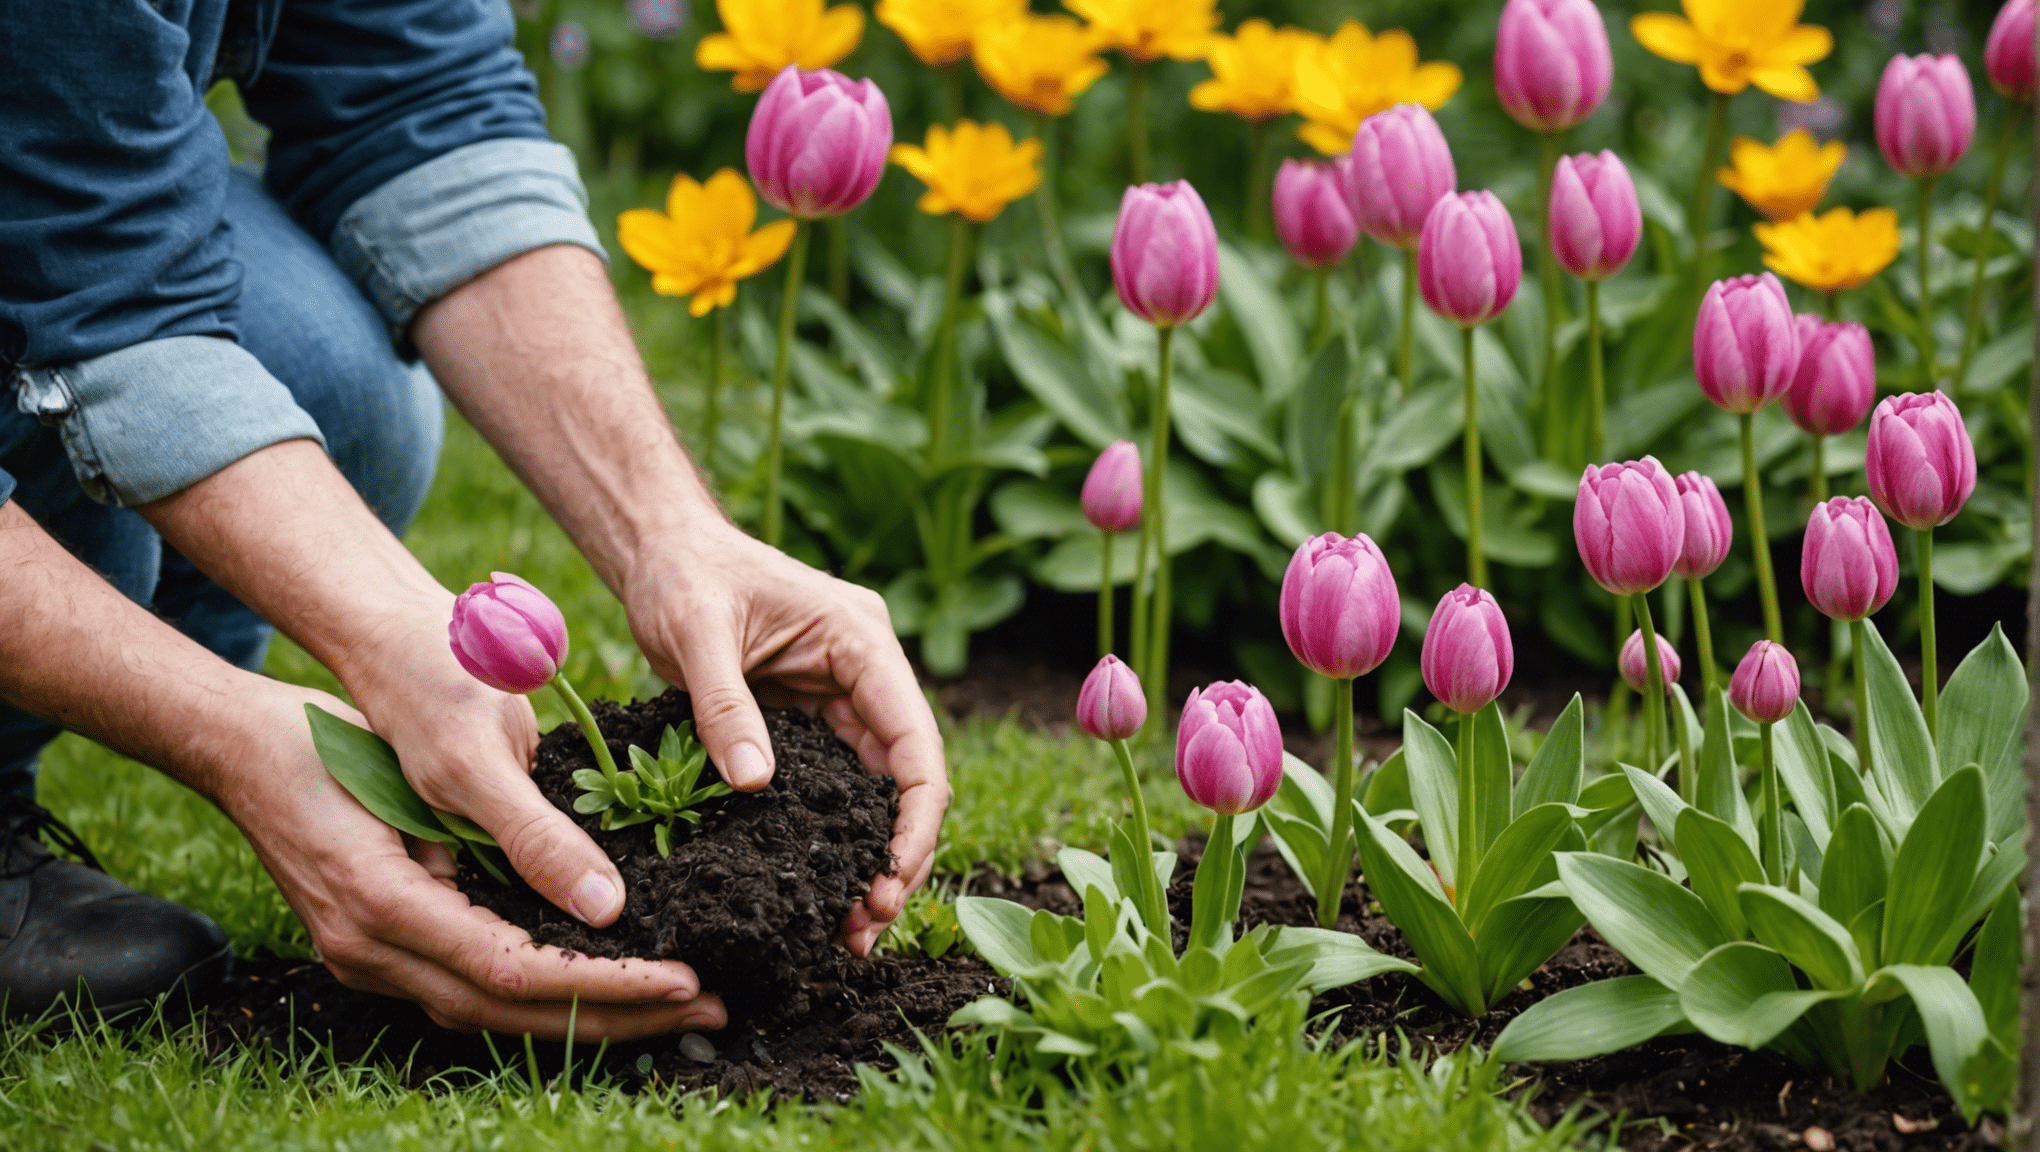 découvrez les meilleures astuces pour planter des bulbes et créer un jardin éclatant au printemps. conseils pratiques pour une belle floraison et un jardin coloré.